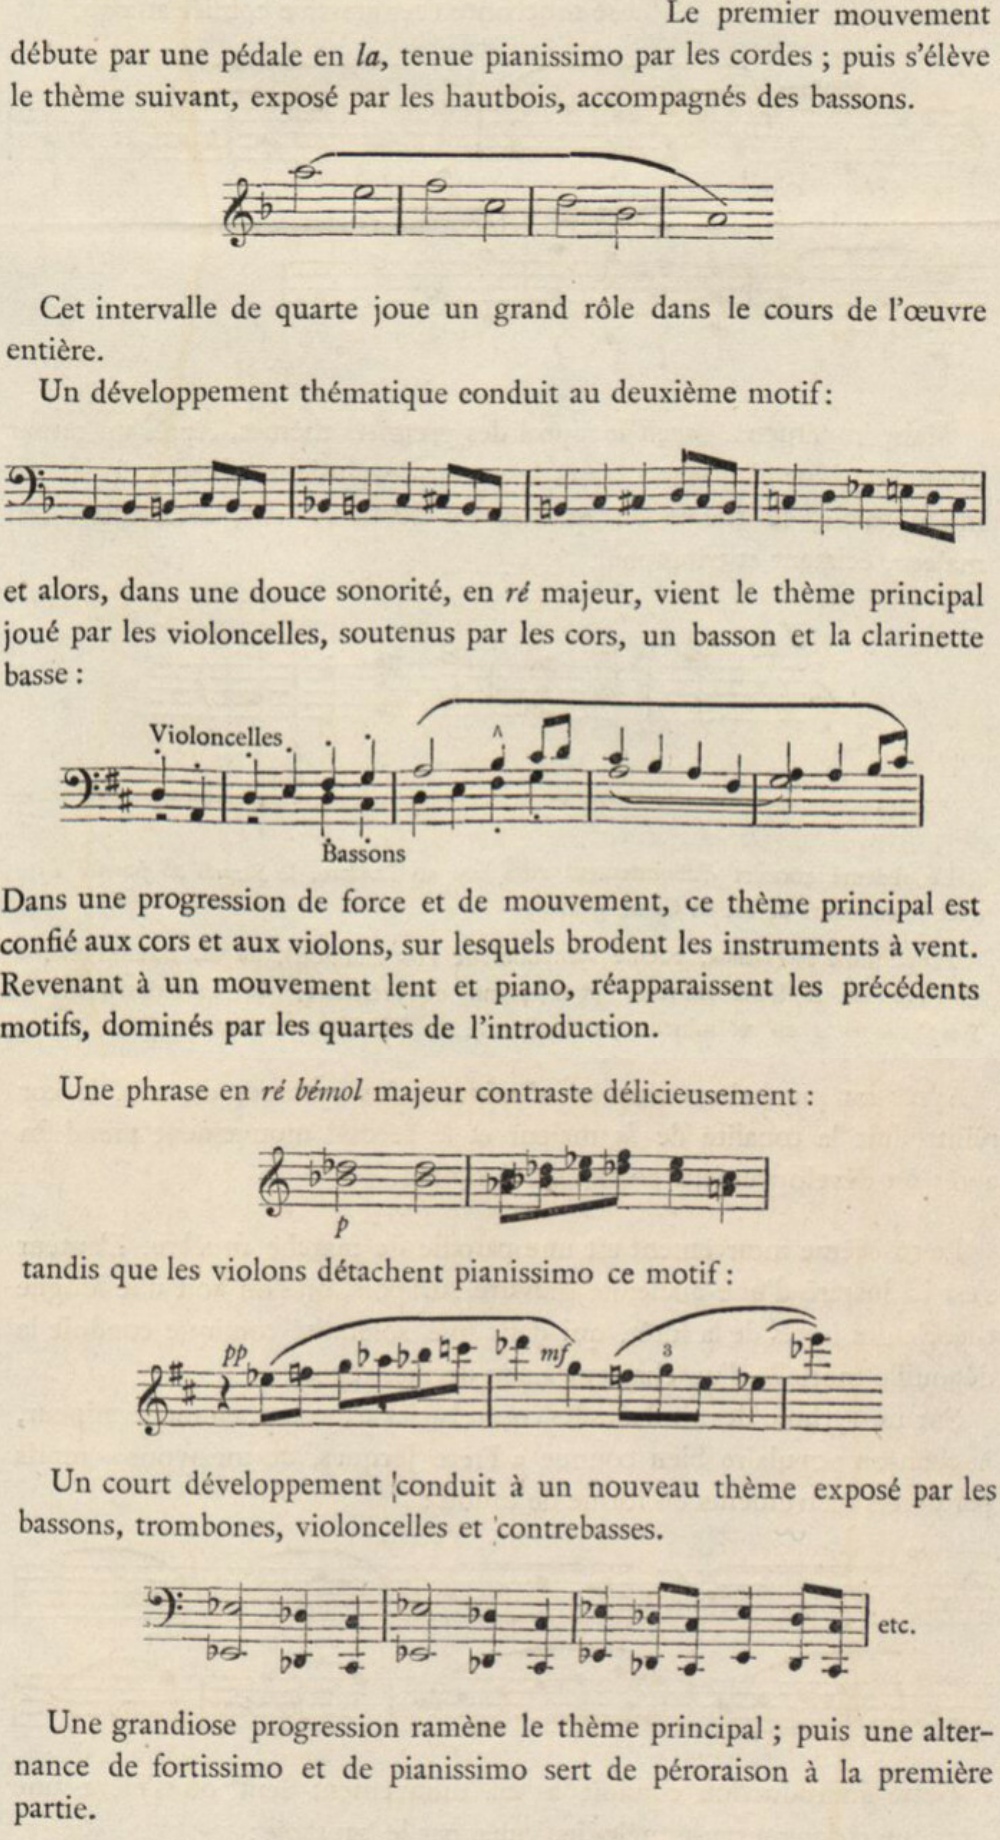 cité de la brochure-programme d'un concert donné le 14 janvier 1911 à Genève, http://d-lib.rism-ch.org/onstage/?page=CH_Gc_prg_08-0341